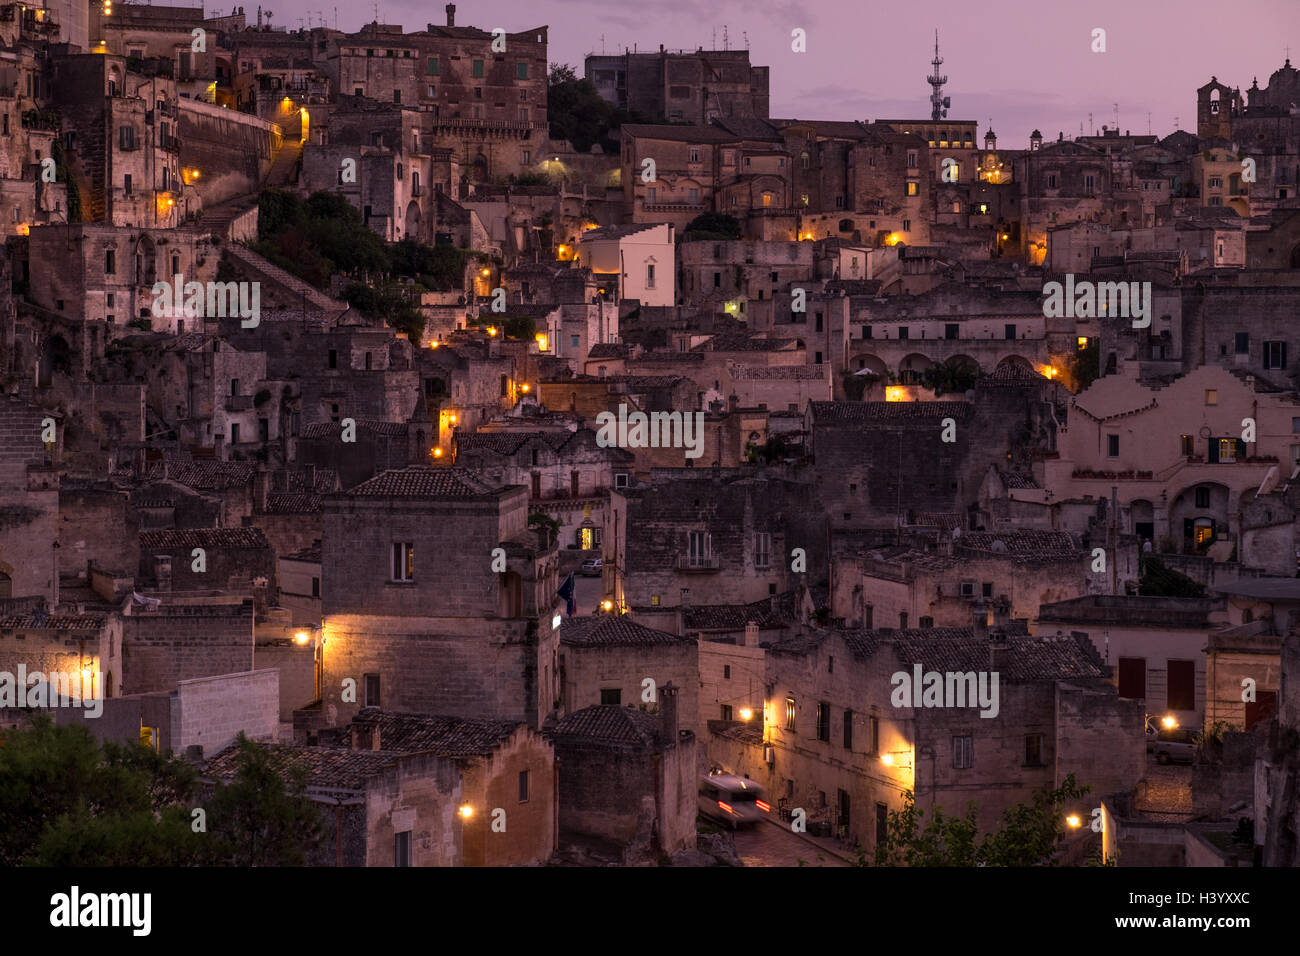 City skyline at night, matera, Italy Stock Photo